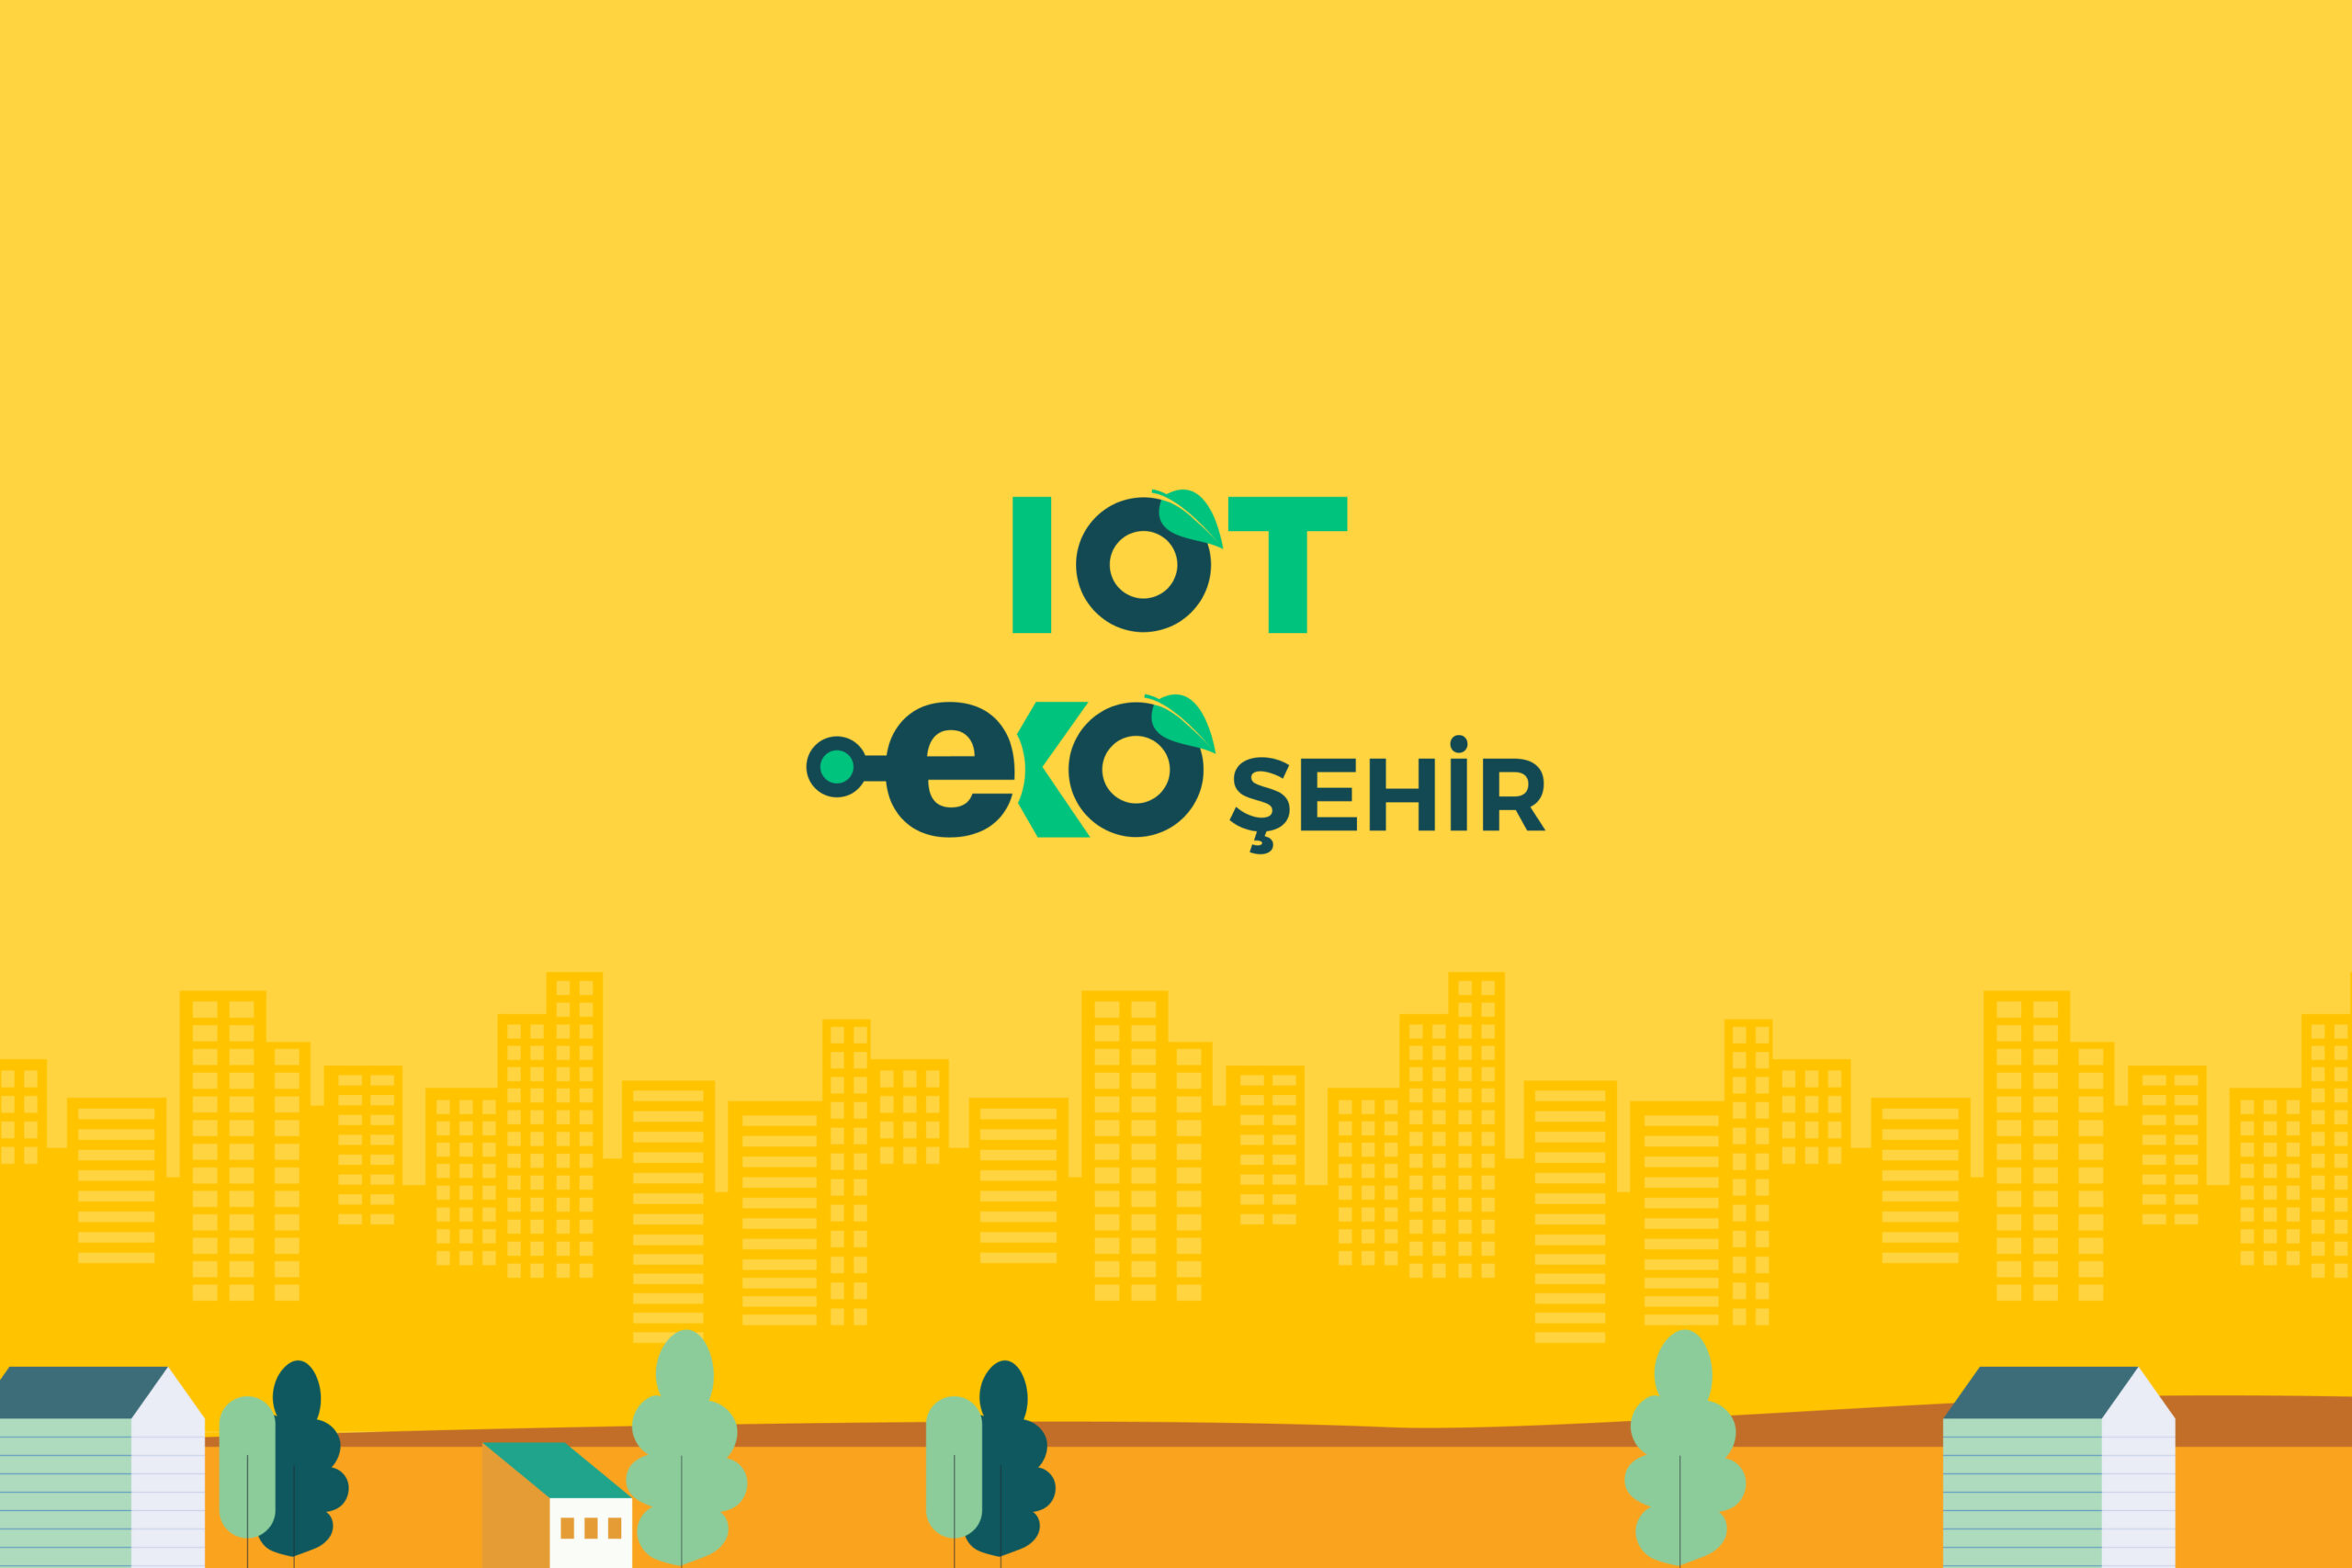 Ekoşehir: IoT ile Entegre Sürdürülebilir Şehirler